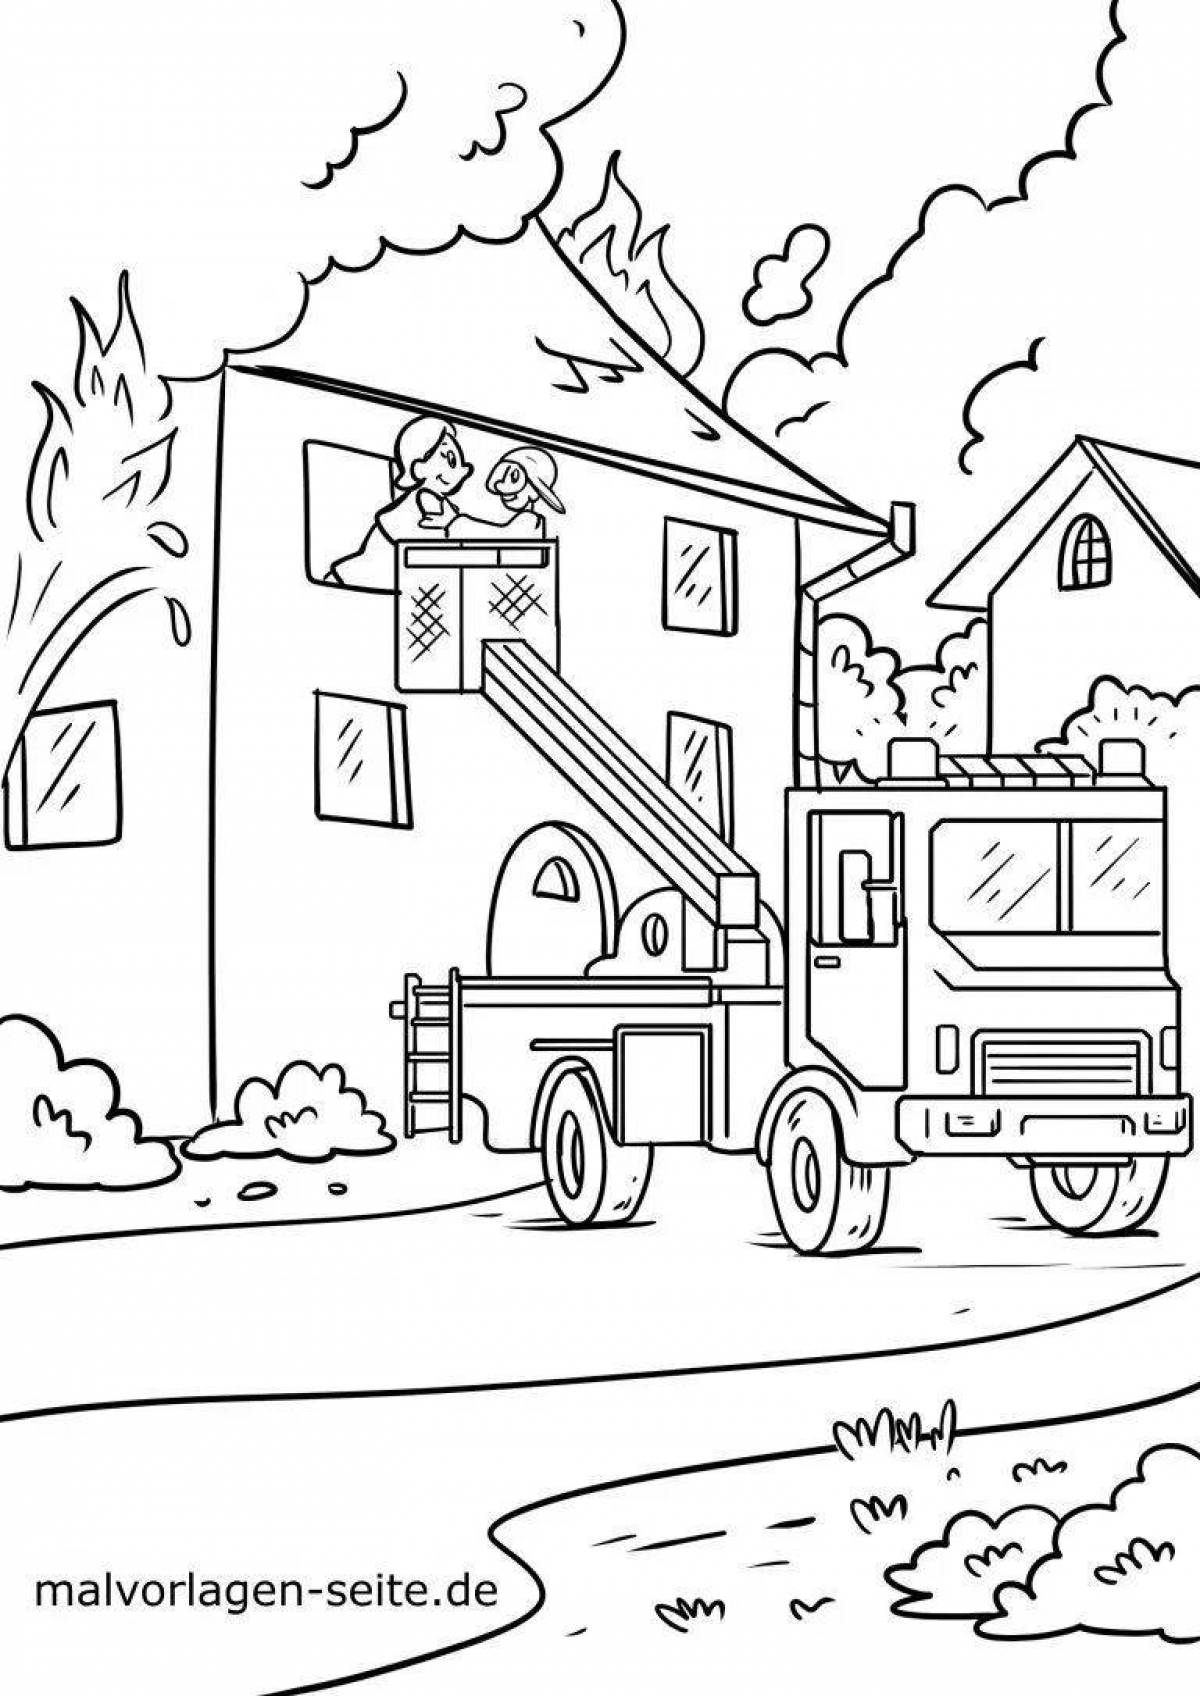 Рисунки для срисовки на тему пожарная безопасность (50 картинок)